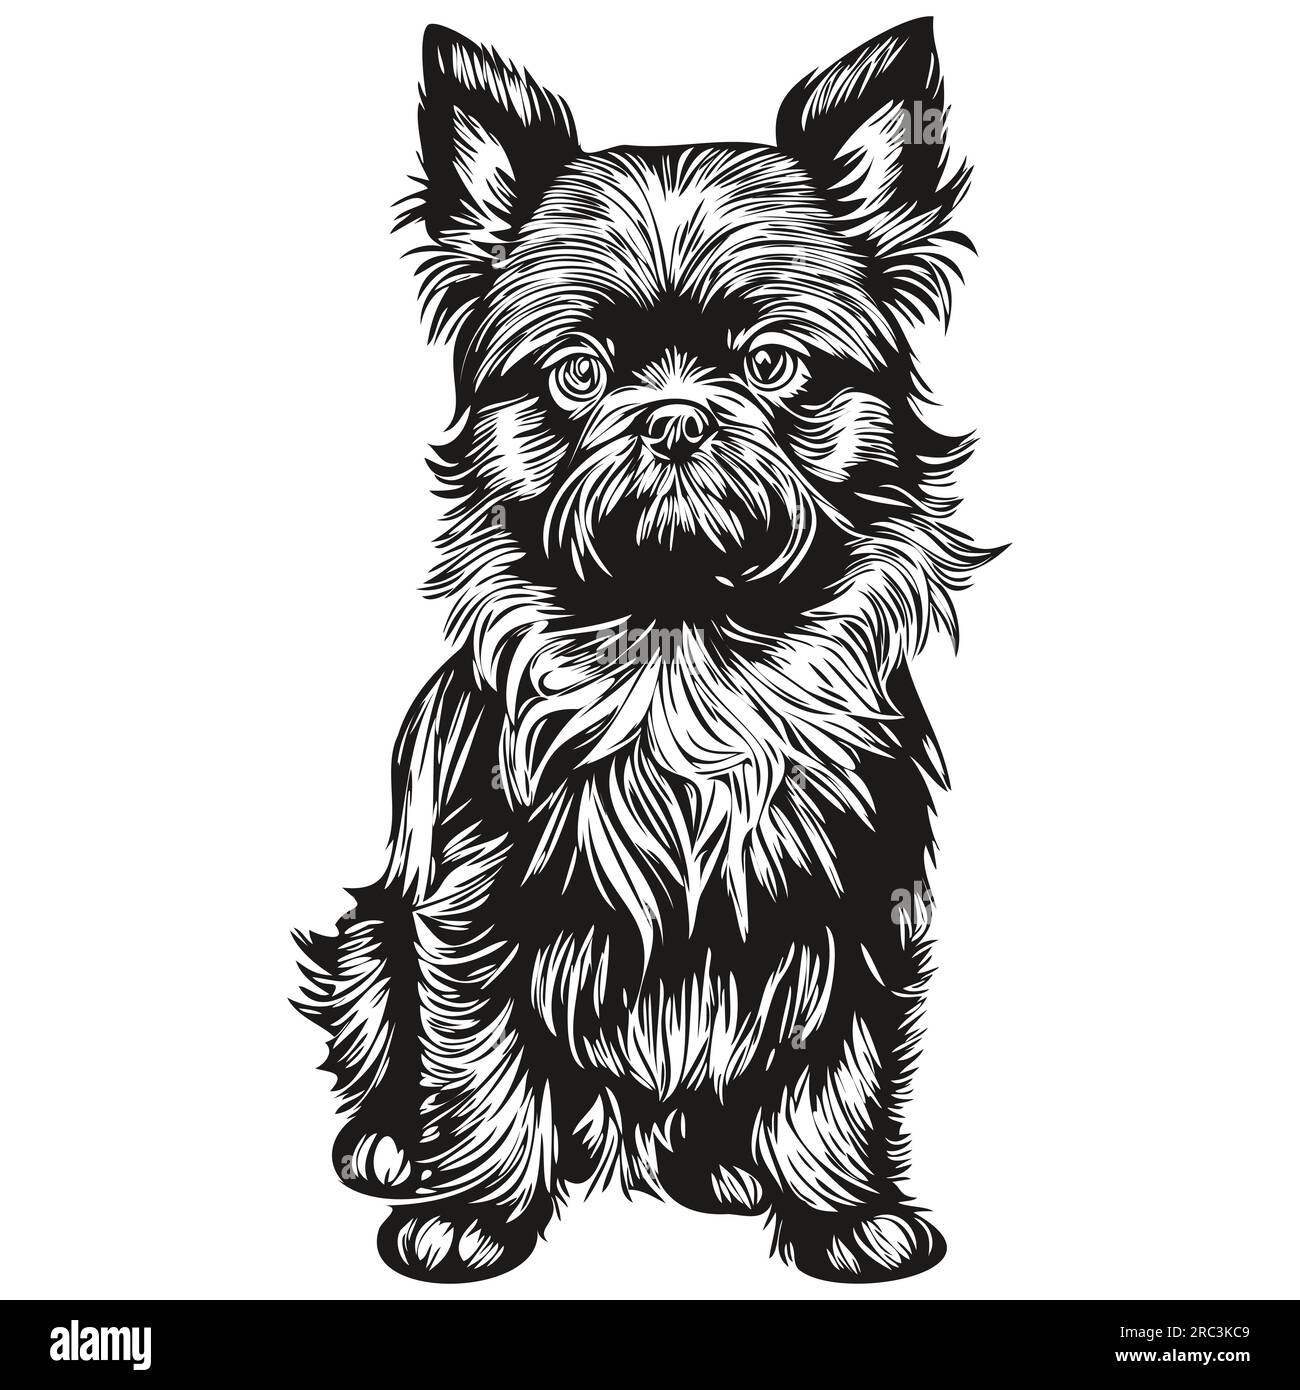 Affenpinscher personnage de silhouette de chien animal de compagnie, clip art vecteur animaux de compagnie dessin noir et blanc dessin d'esquisse Illustration de Vecteur